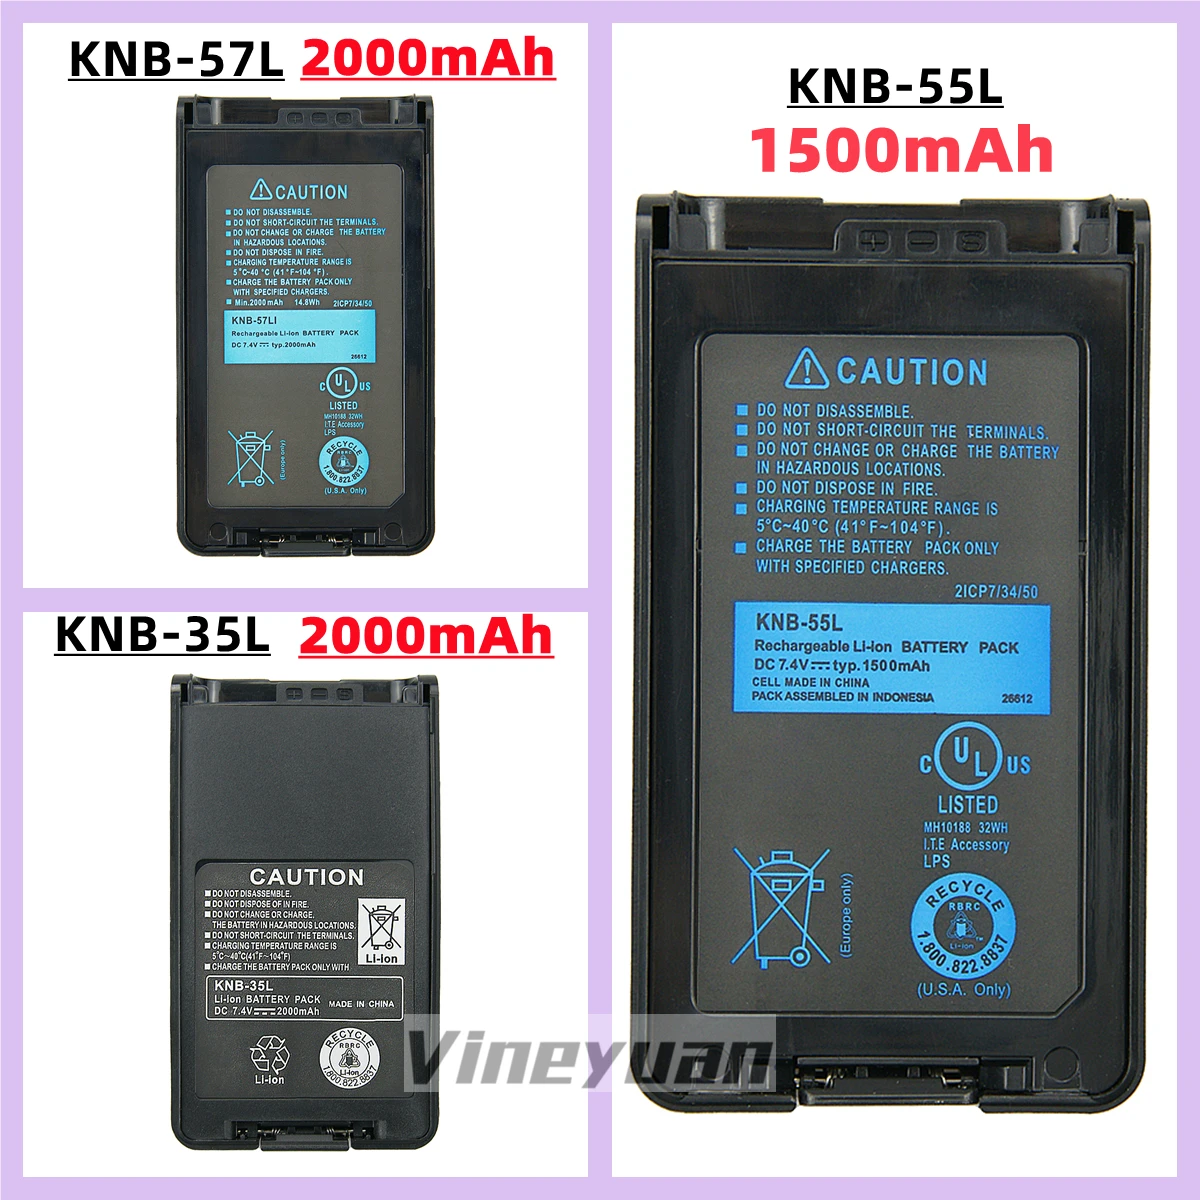 10PCS KNB-55L Replacement Battery for Kenwood TK-3360, TK-3160, TK-2170, TK-3173, TK-3170, TK-2360, NX-320, TK-3140, KNB-57L